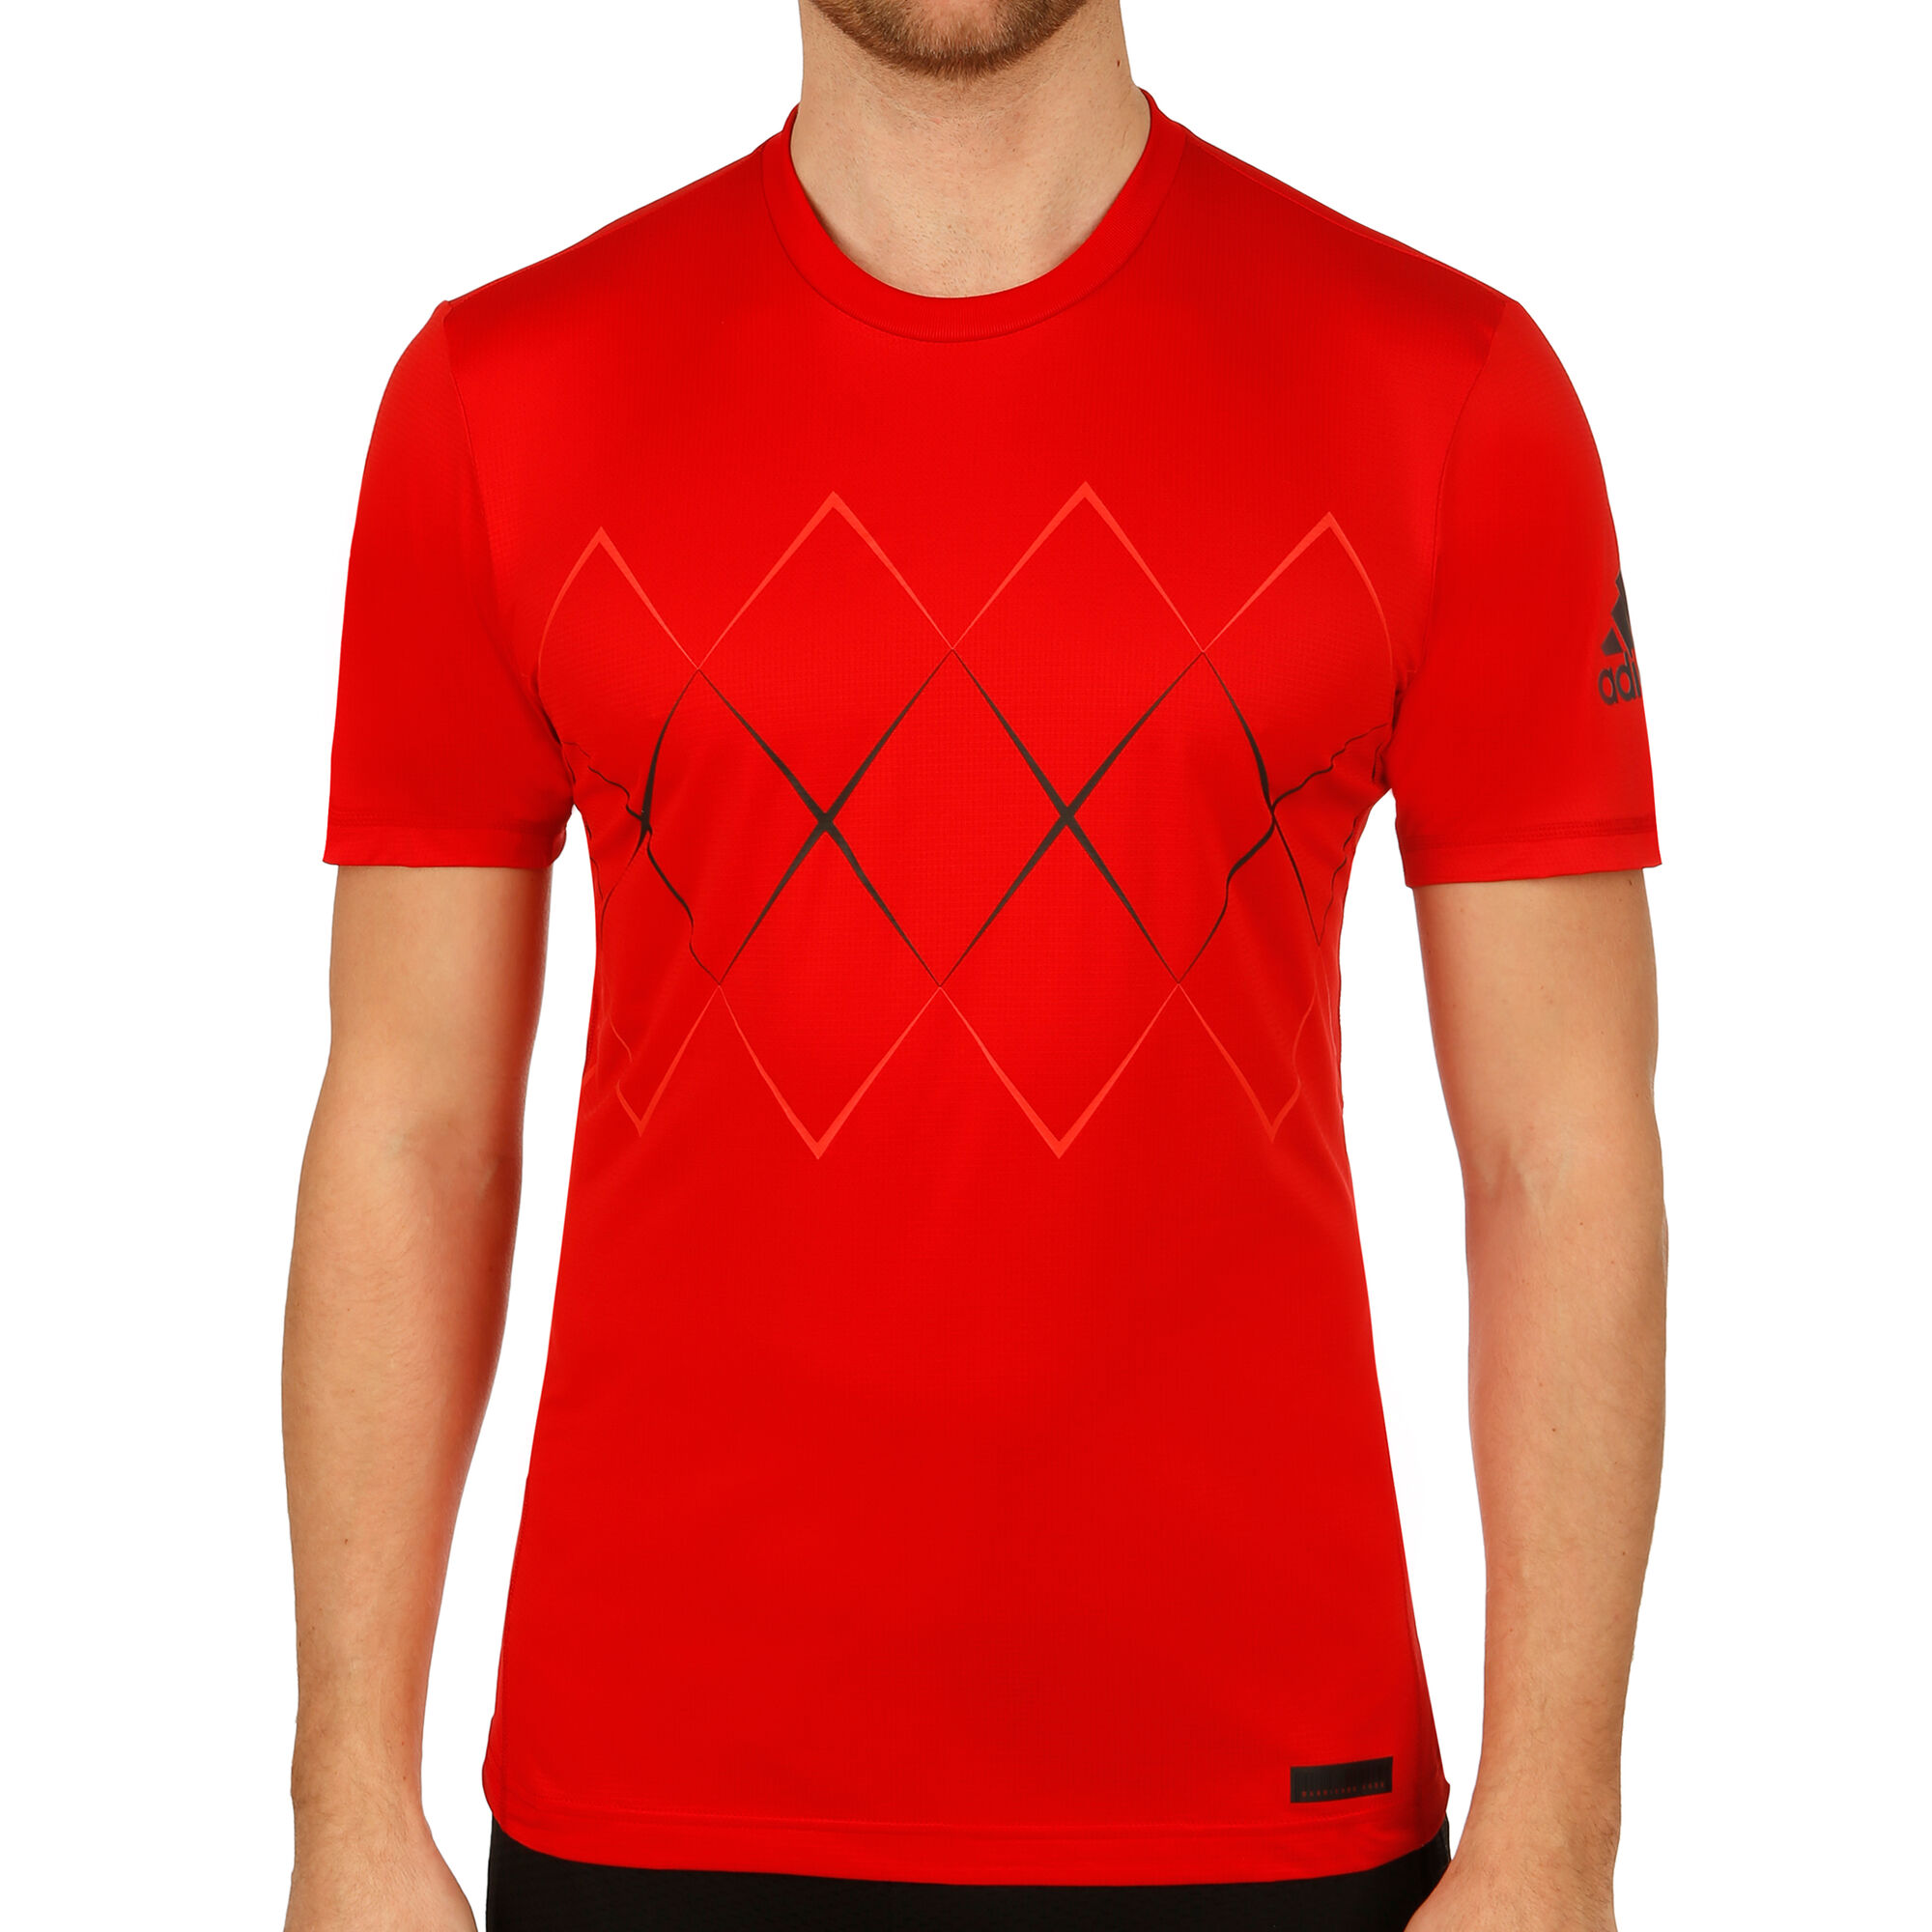 matiz De vez en cuando Más temprano buy adidas Barricade T-Shirt Men - Red, Black online | Tennis-Point